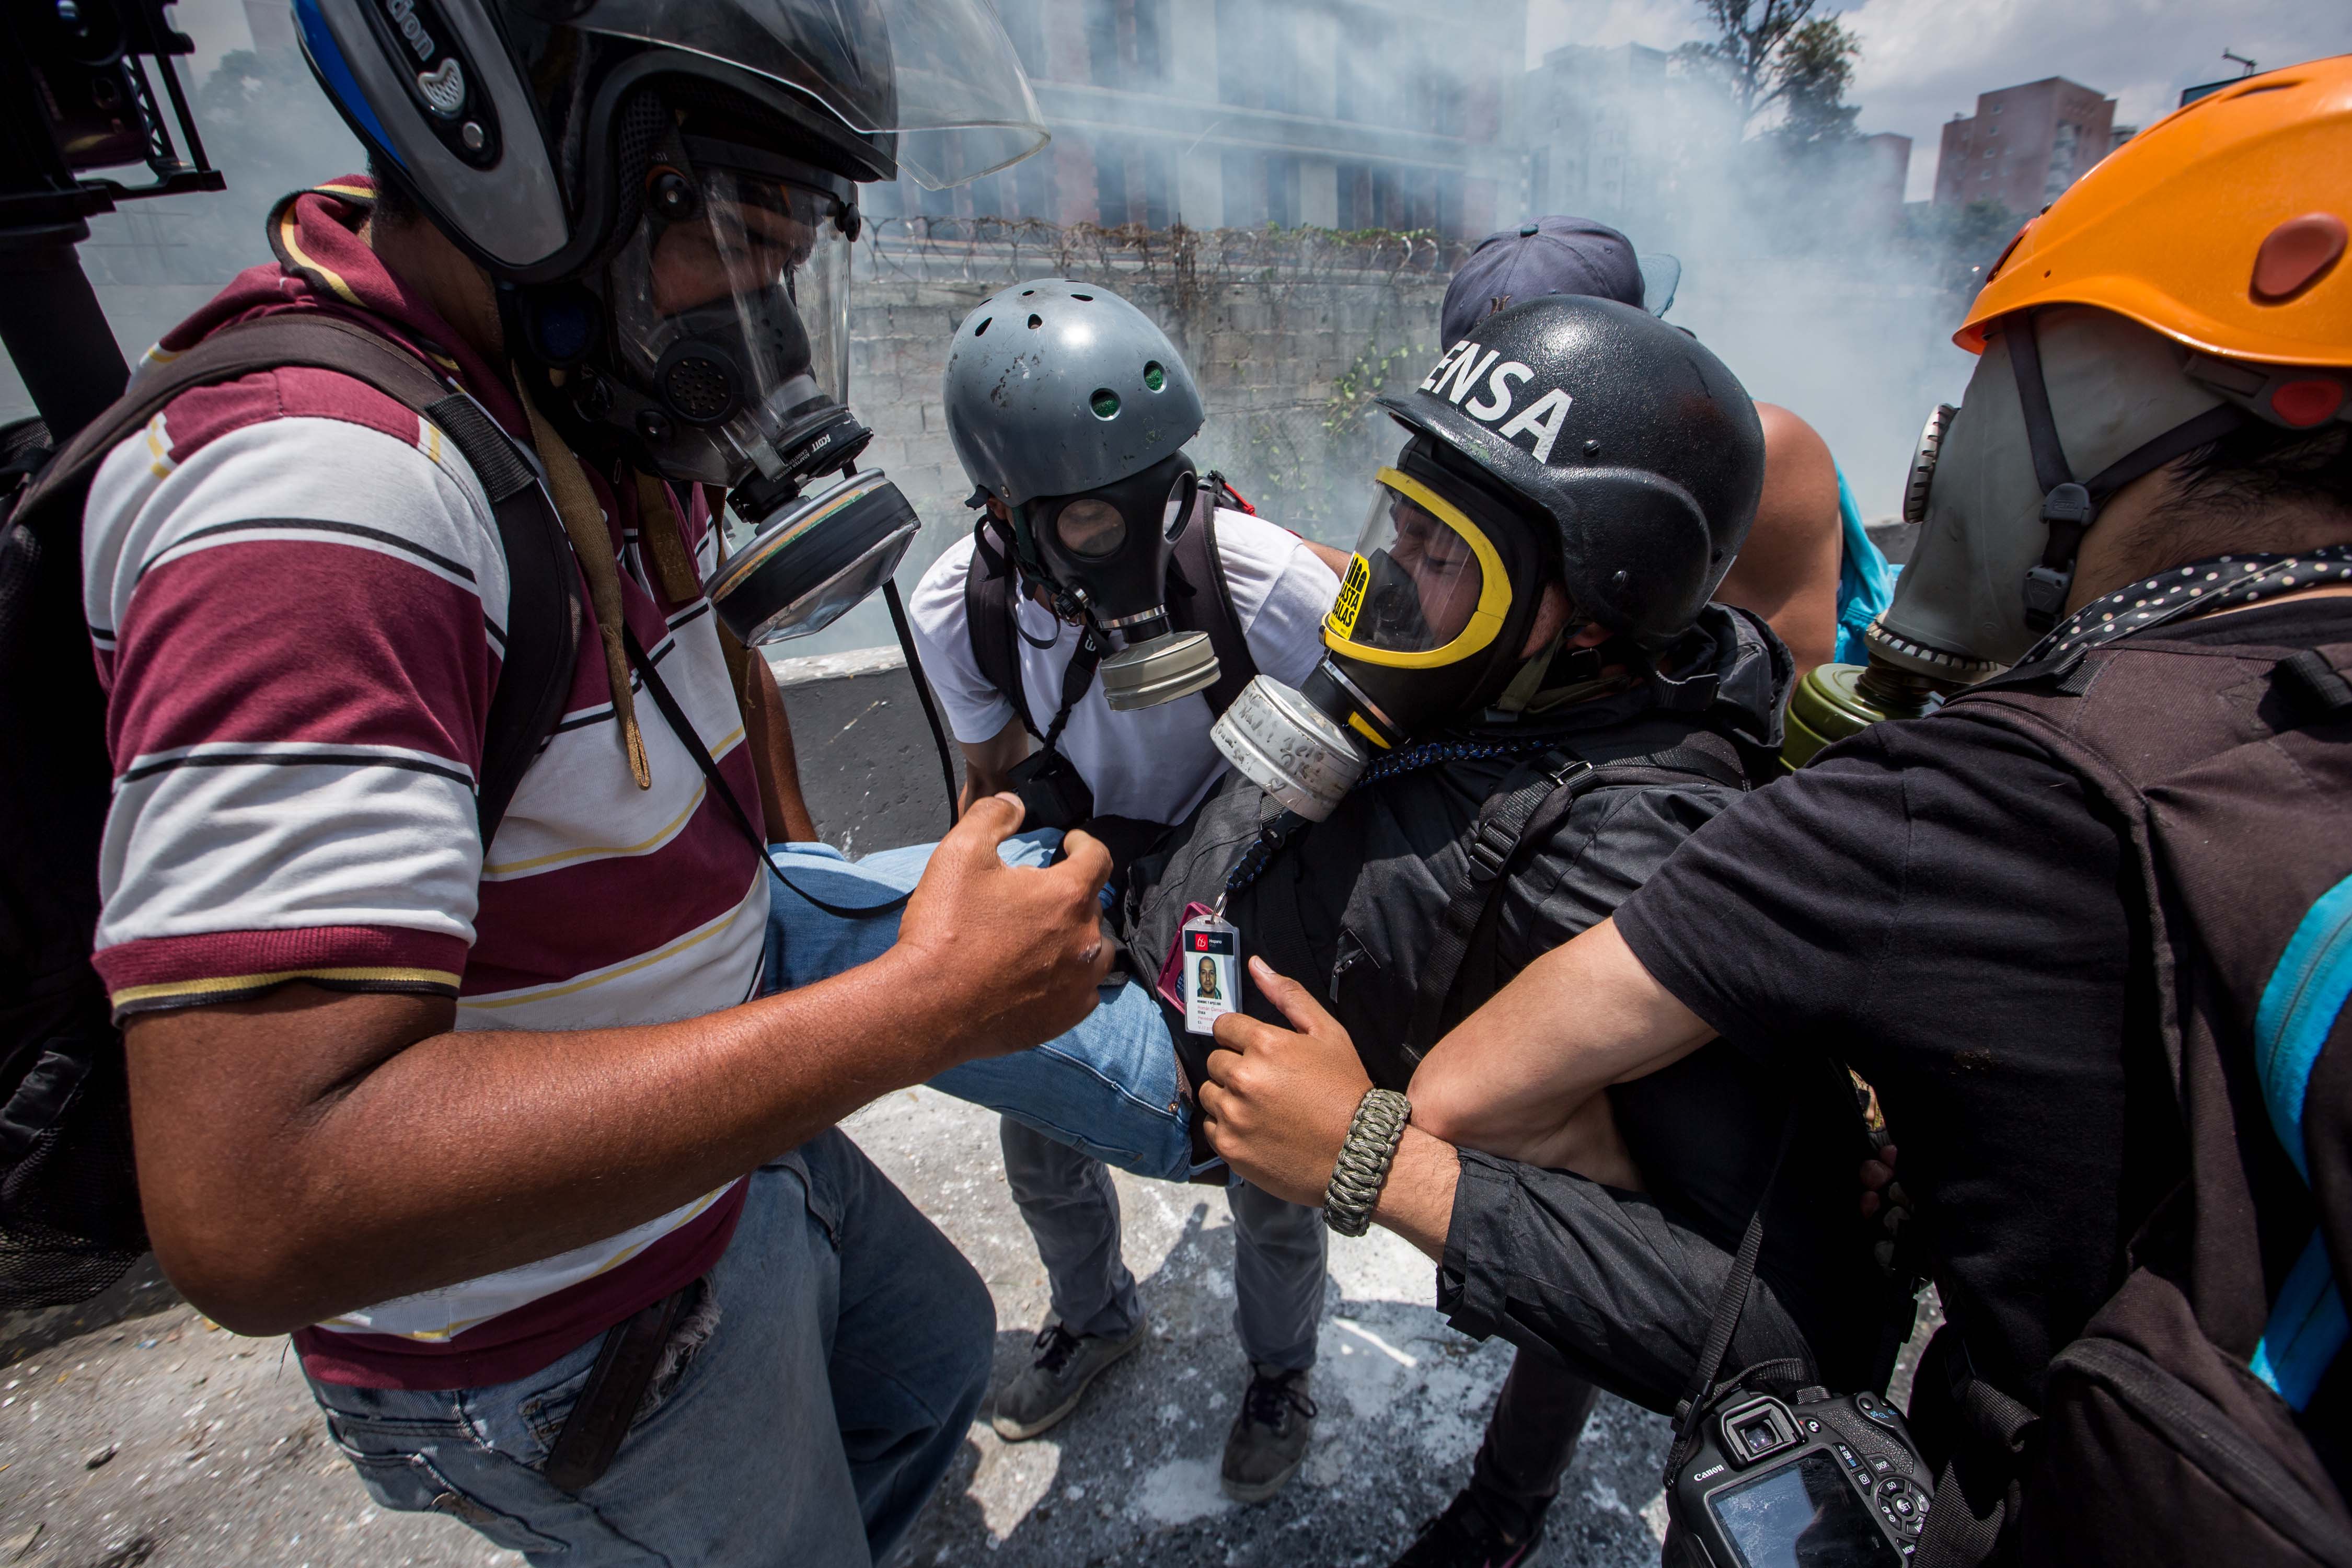 Fracturan pierna a periodista de LaPatilla con una bomba lacrimógena #10Abr (FOTOS)